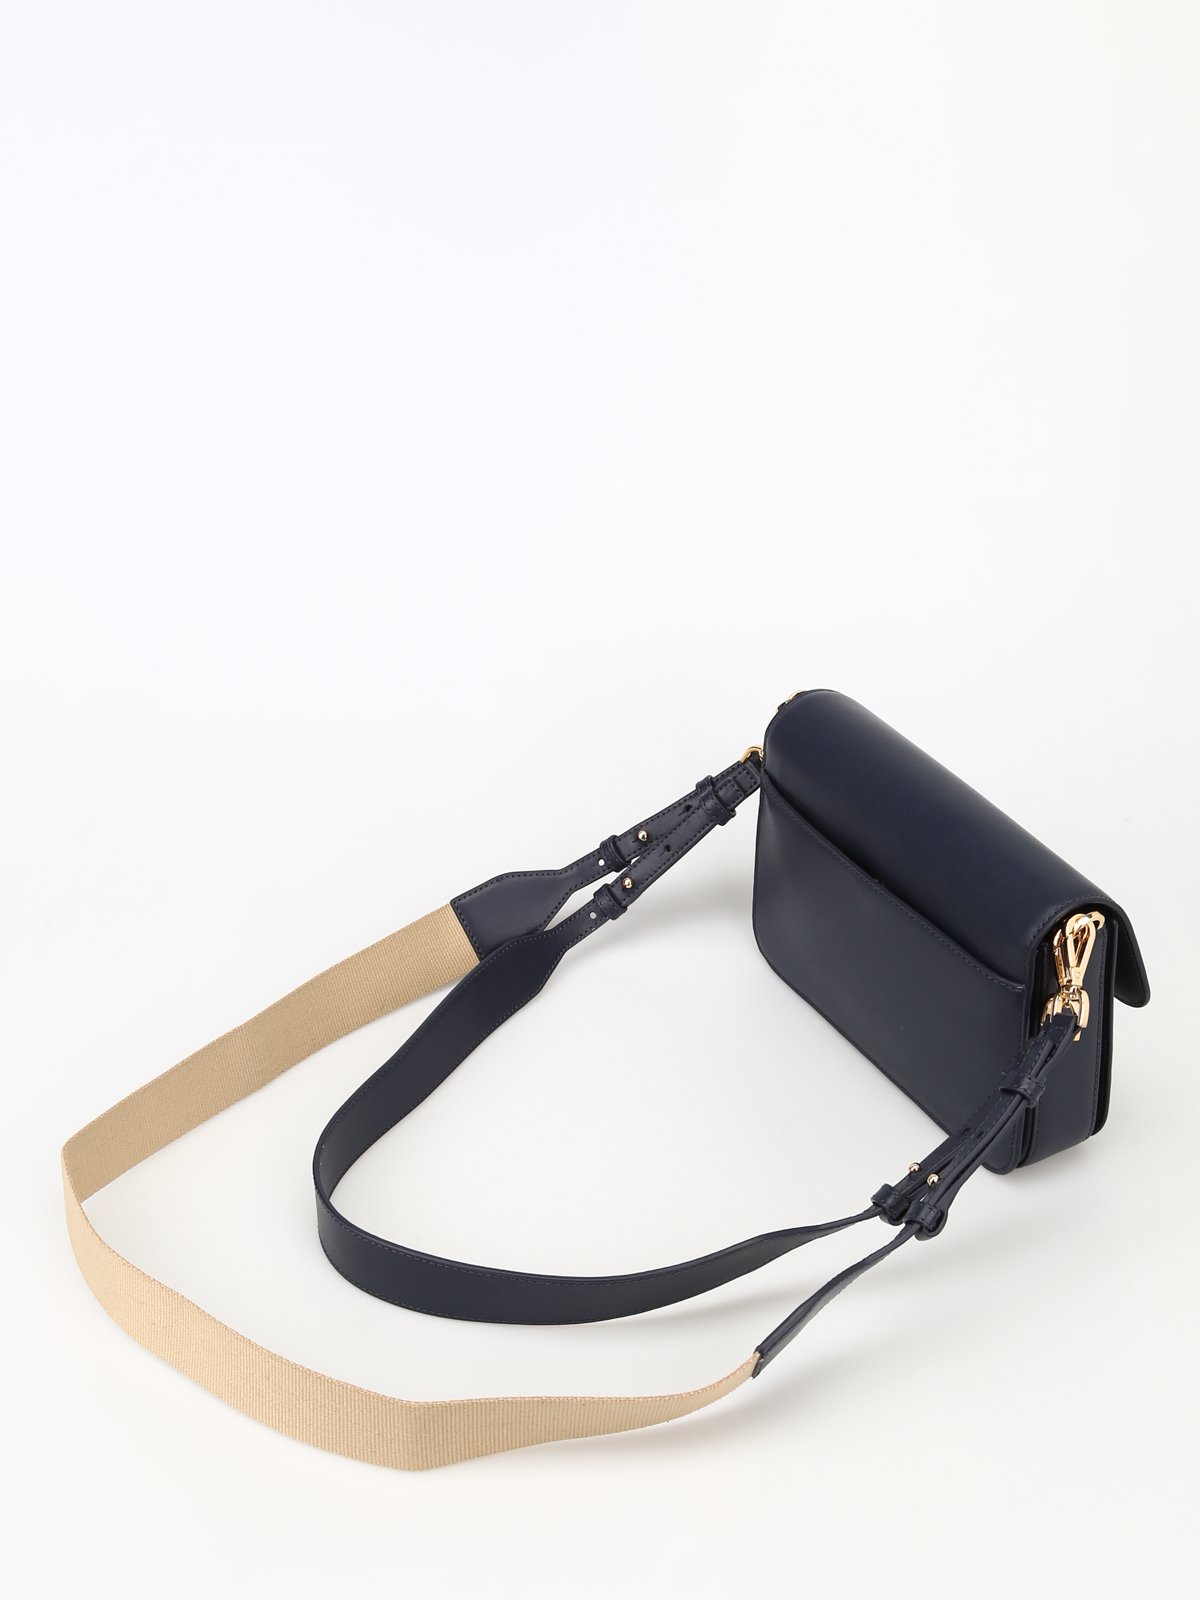 Sloan Editor Medium Leather Shoulder Bag